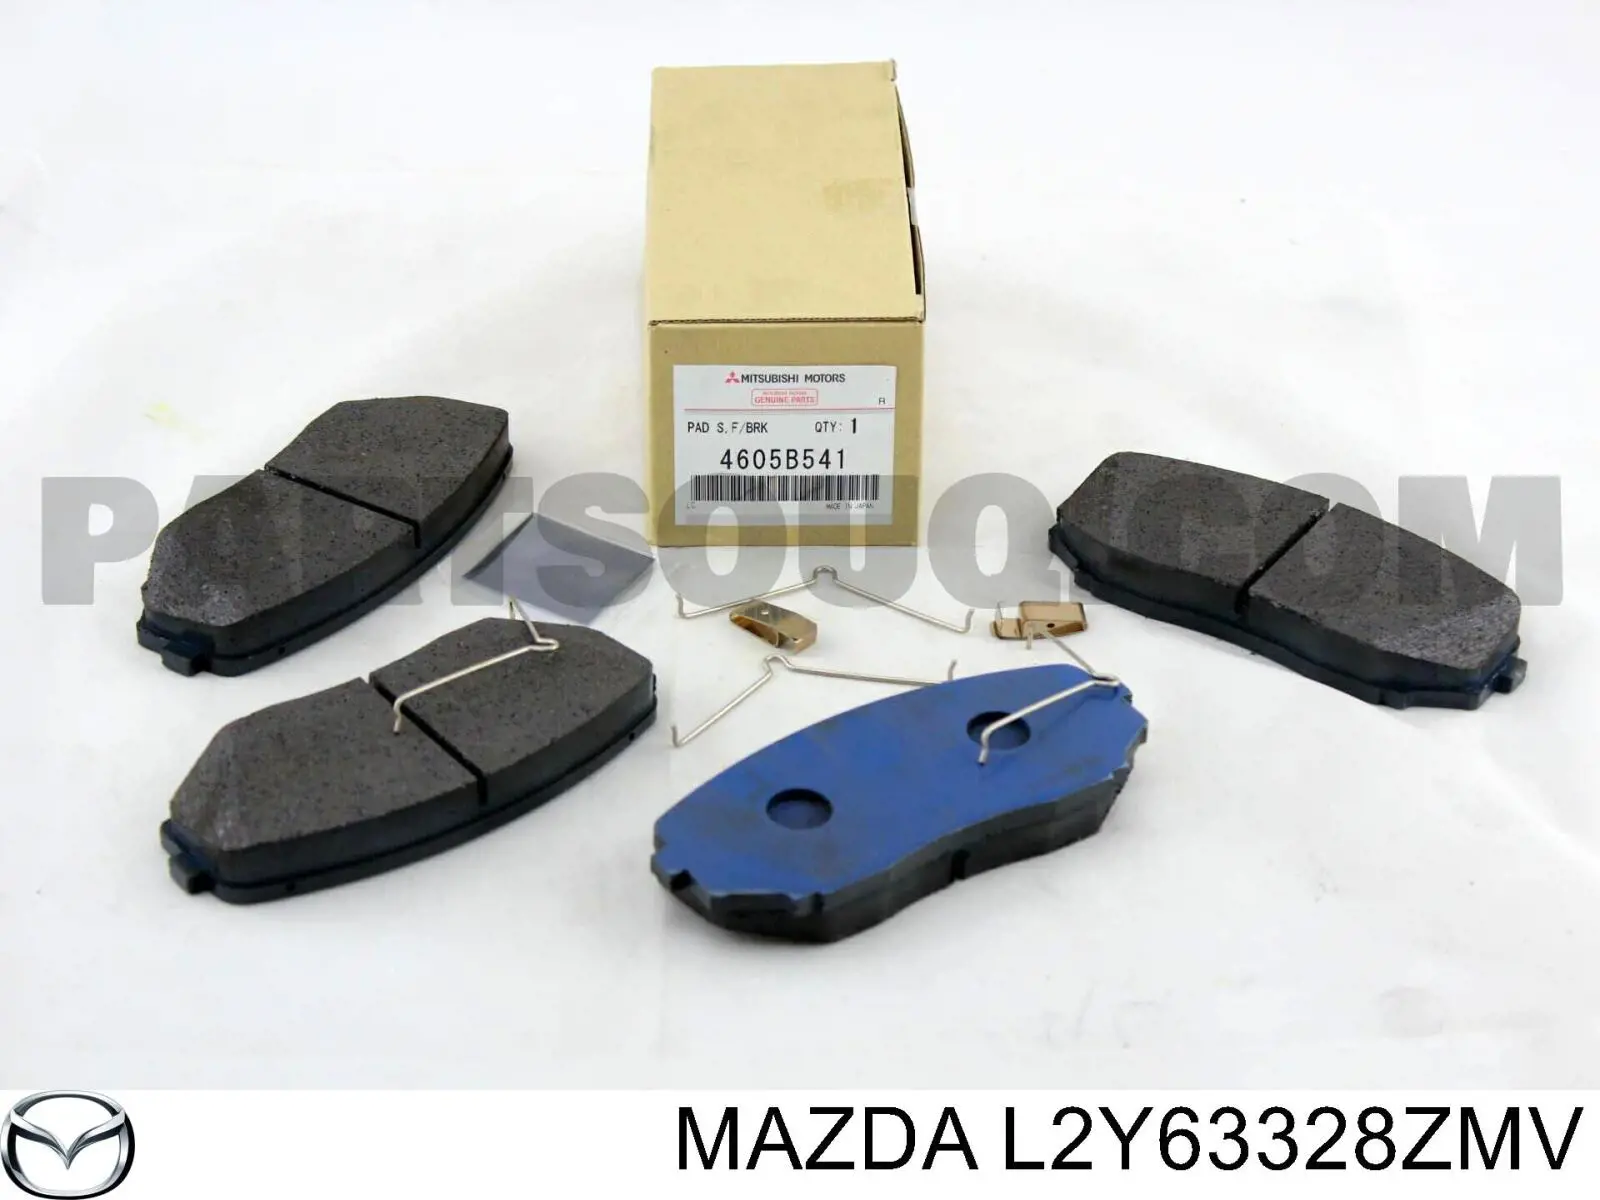 L2Y63328ZMV Mazda pastillas de freno delanteras